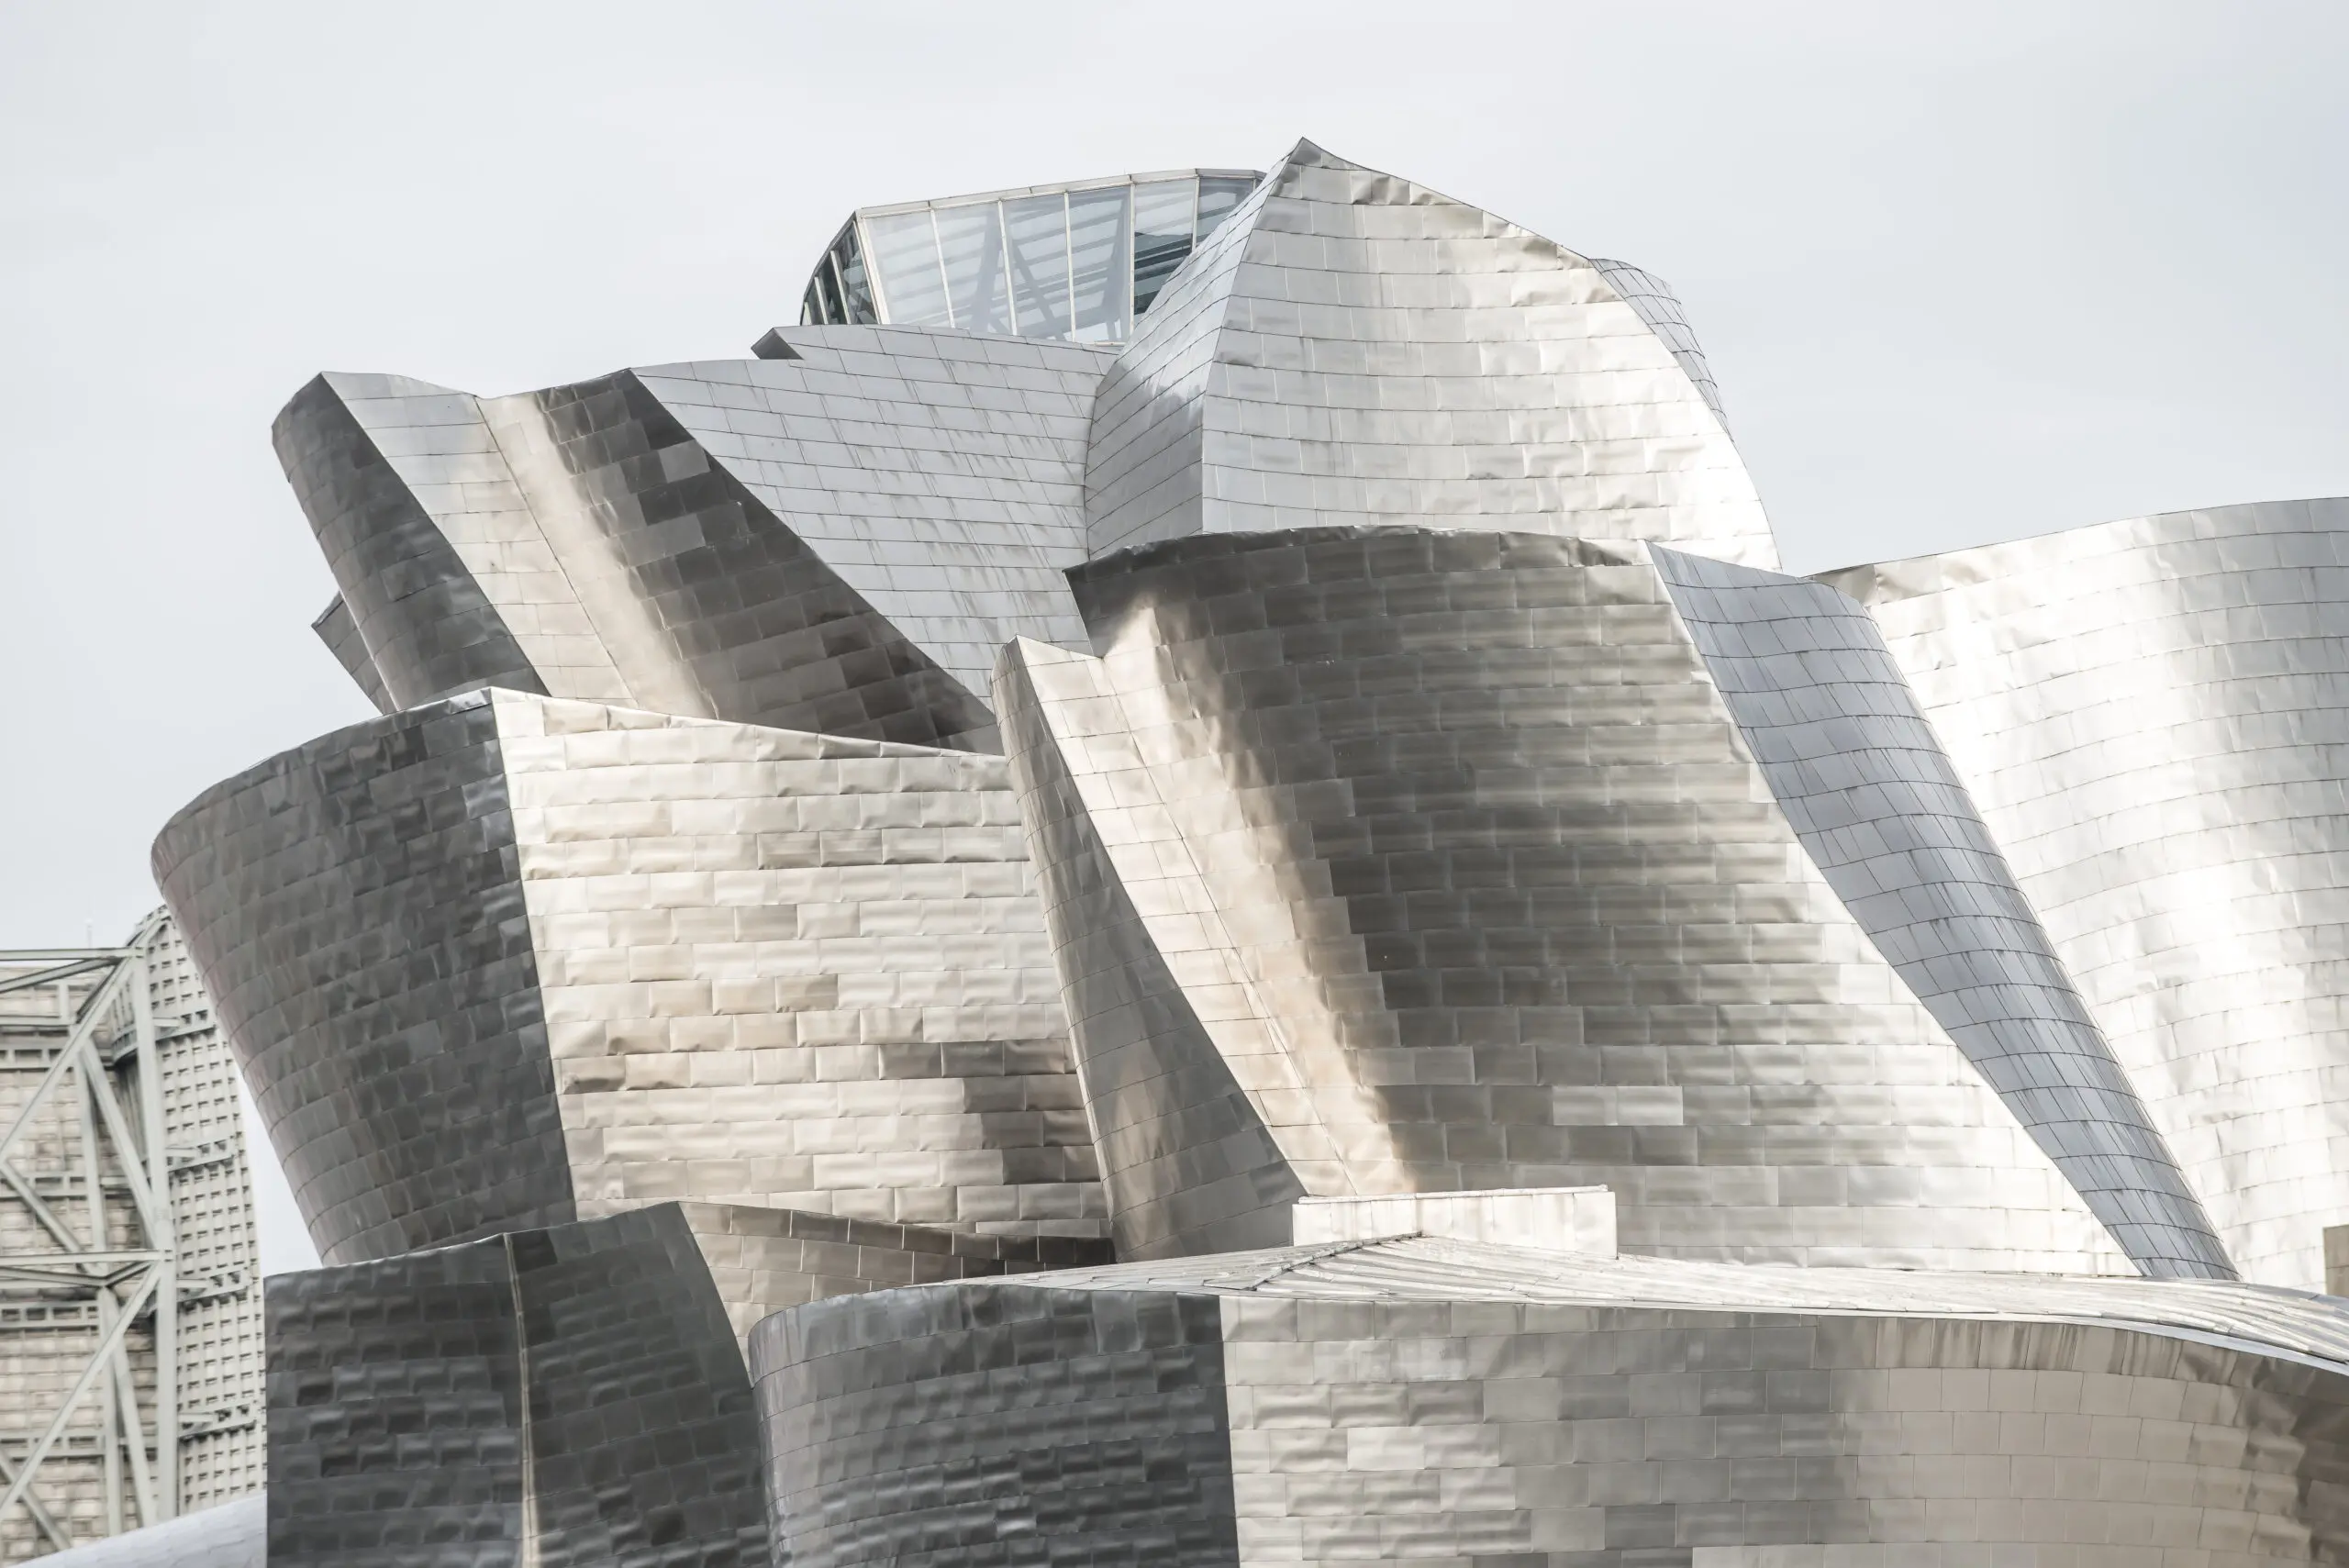 Wandbild (492) Bilbao präsentiert: Architektur,Detailaufnahmen,Sehenswürdigkeiten